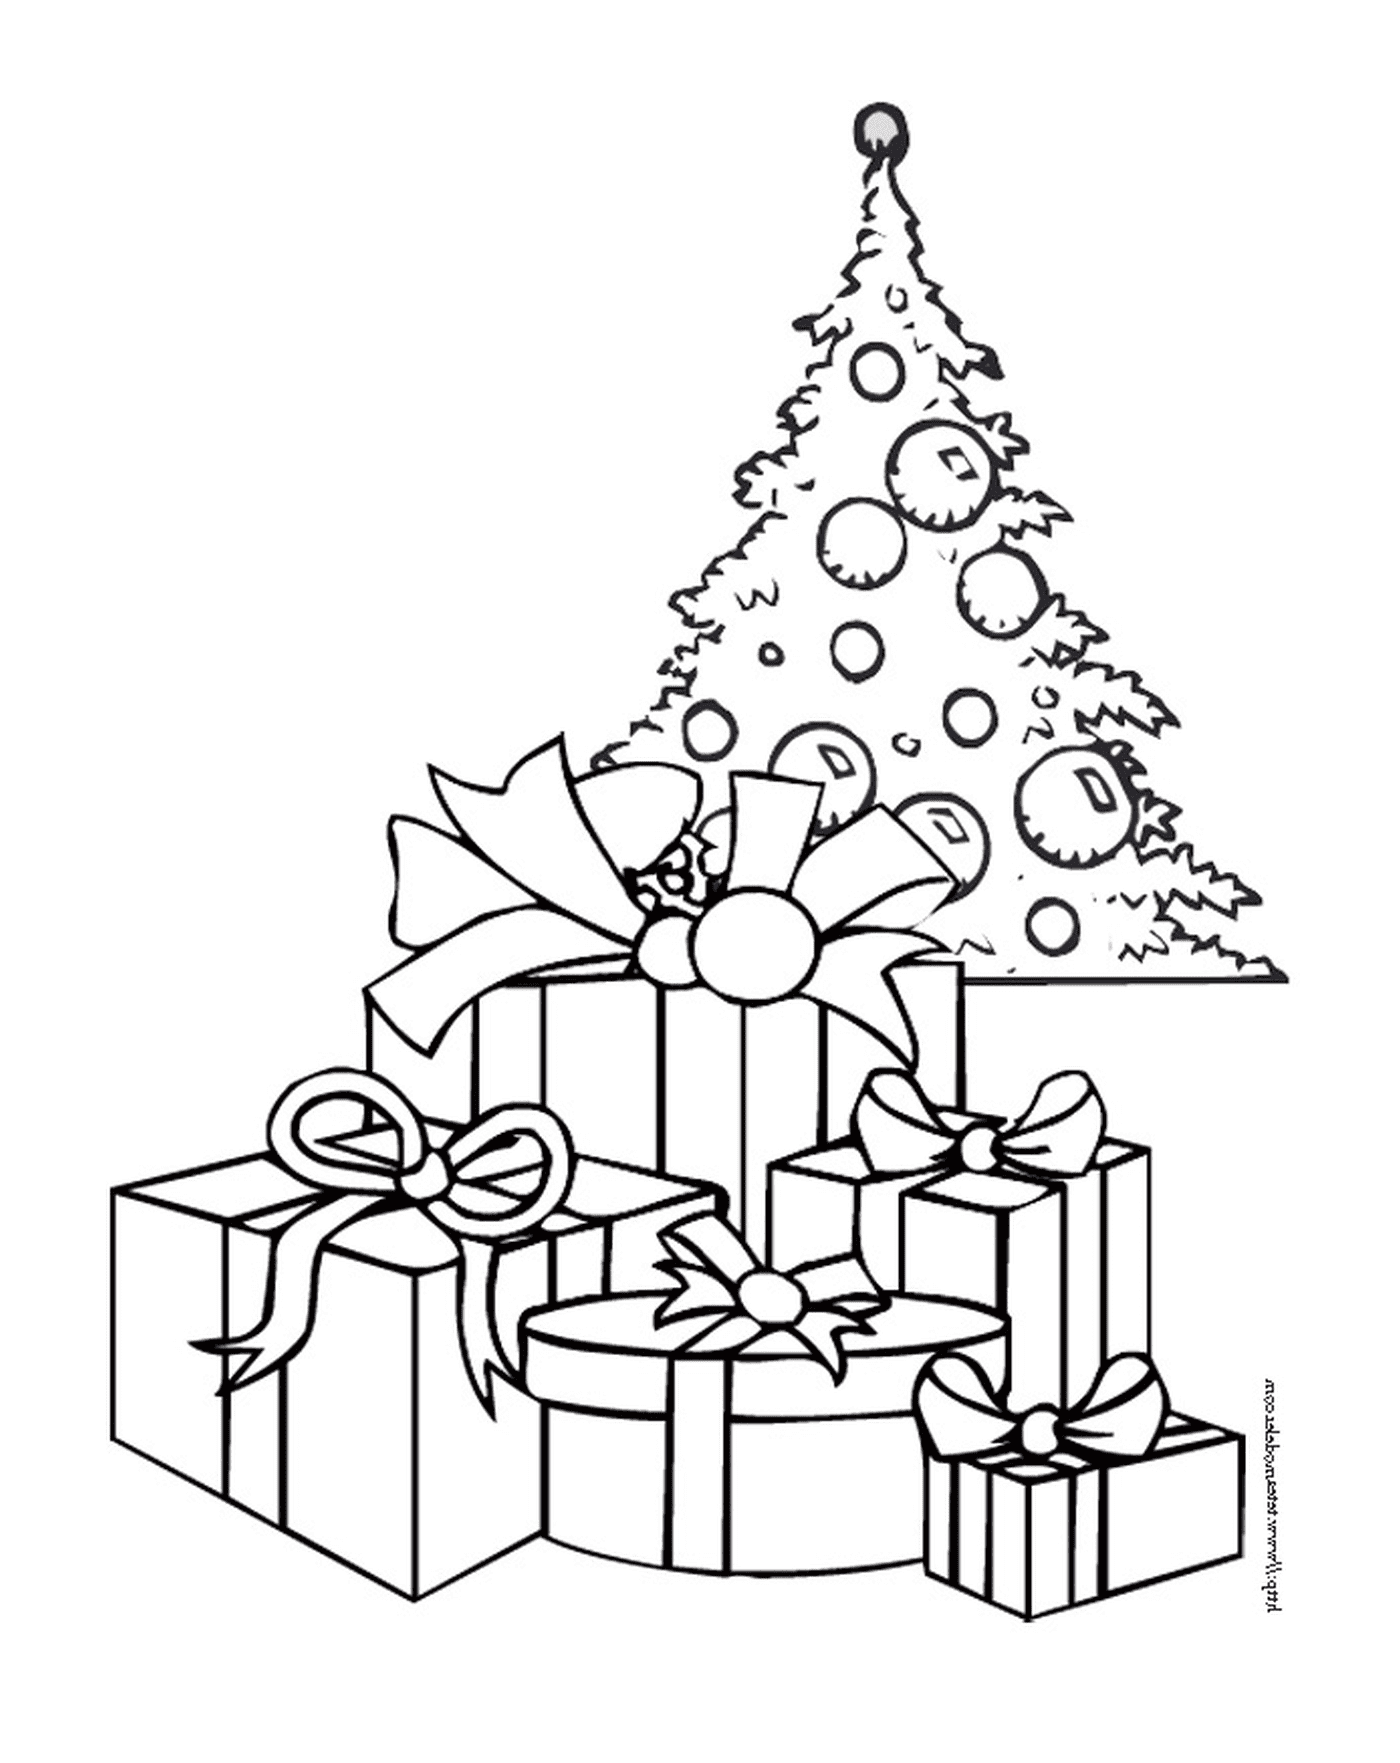  شجرة عيد الميلاد مع الهدايا في الطابق العلوي 